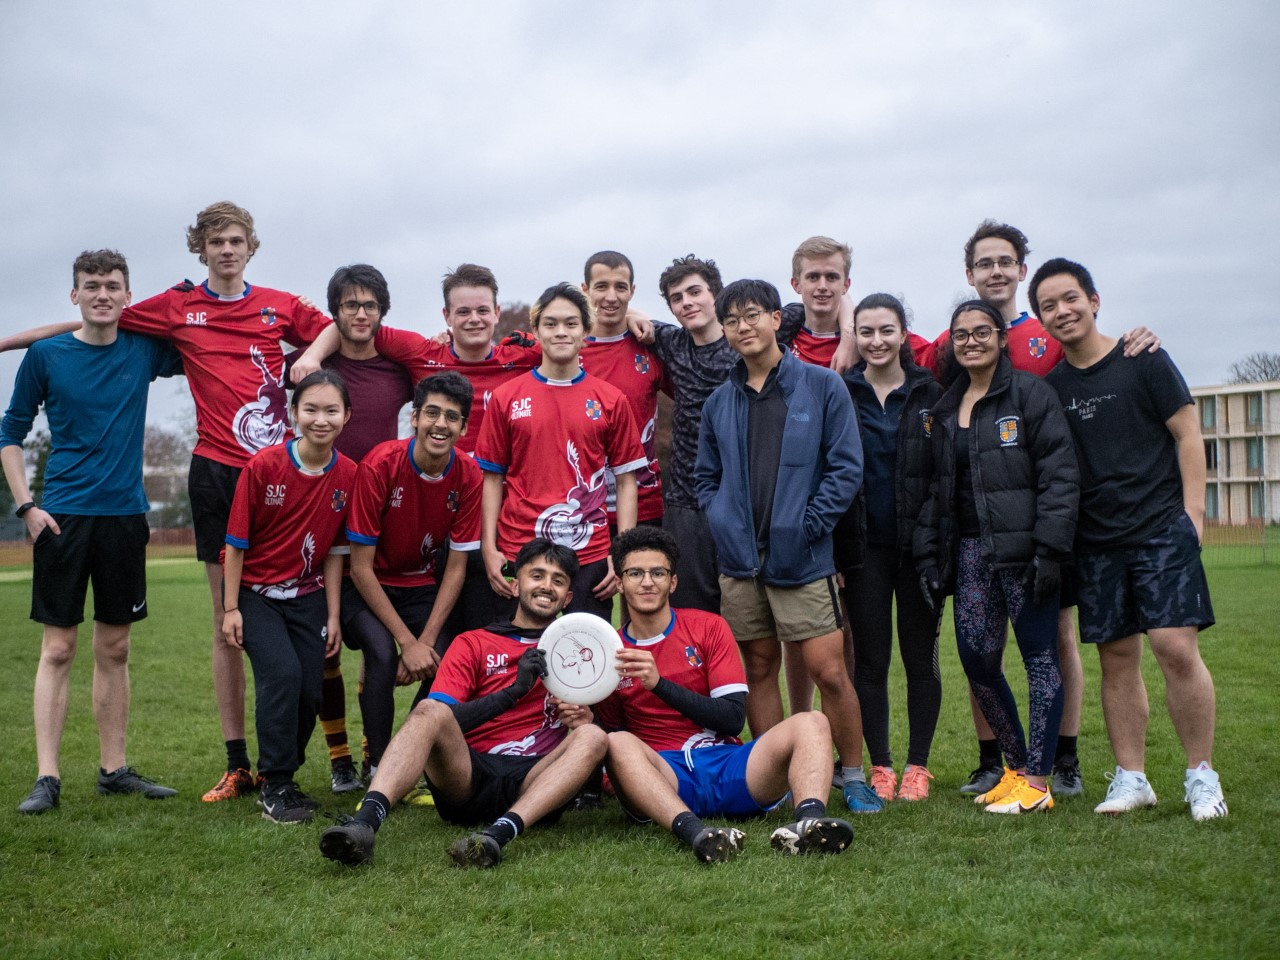 St John's Ultimate Frisbee team 2022